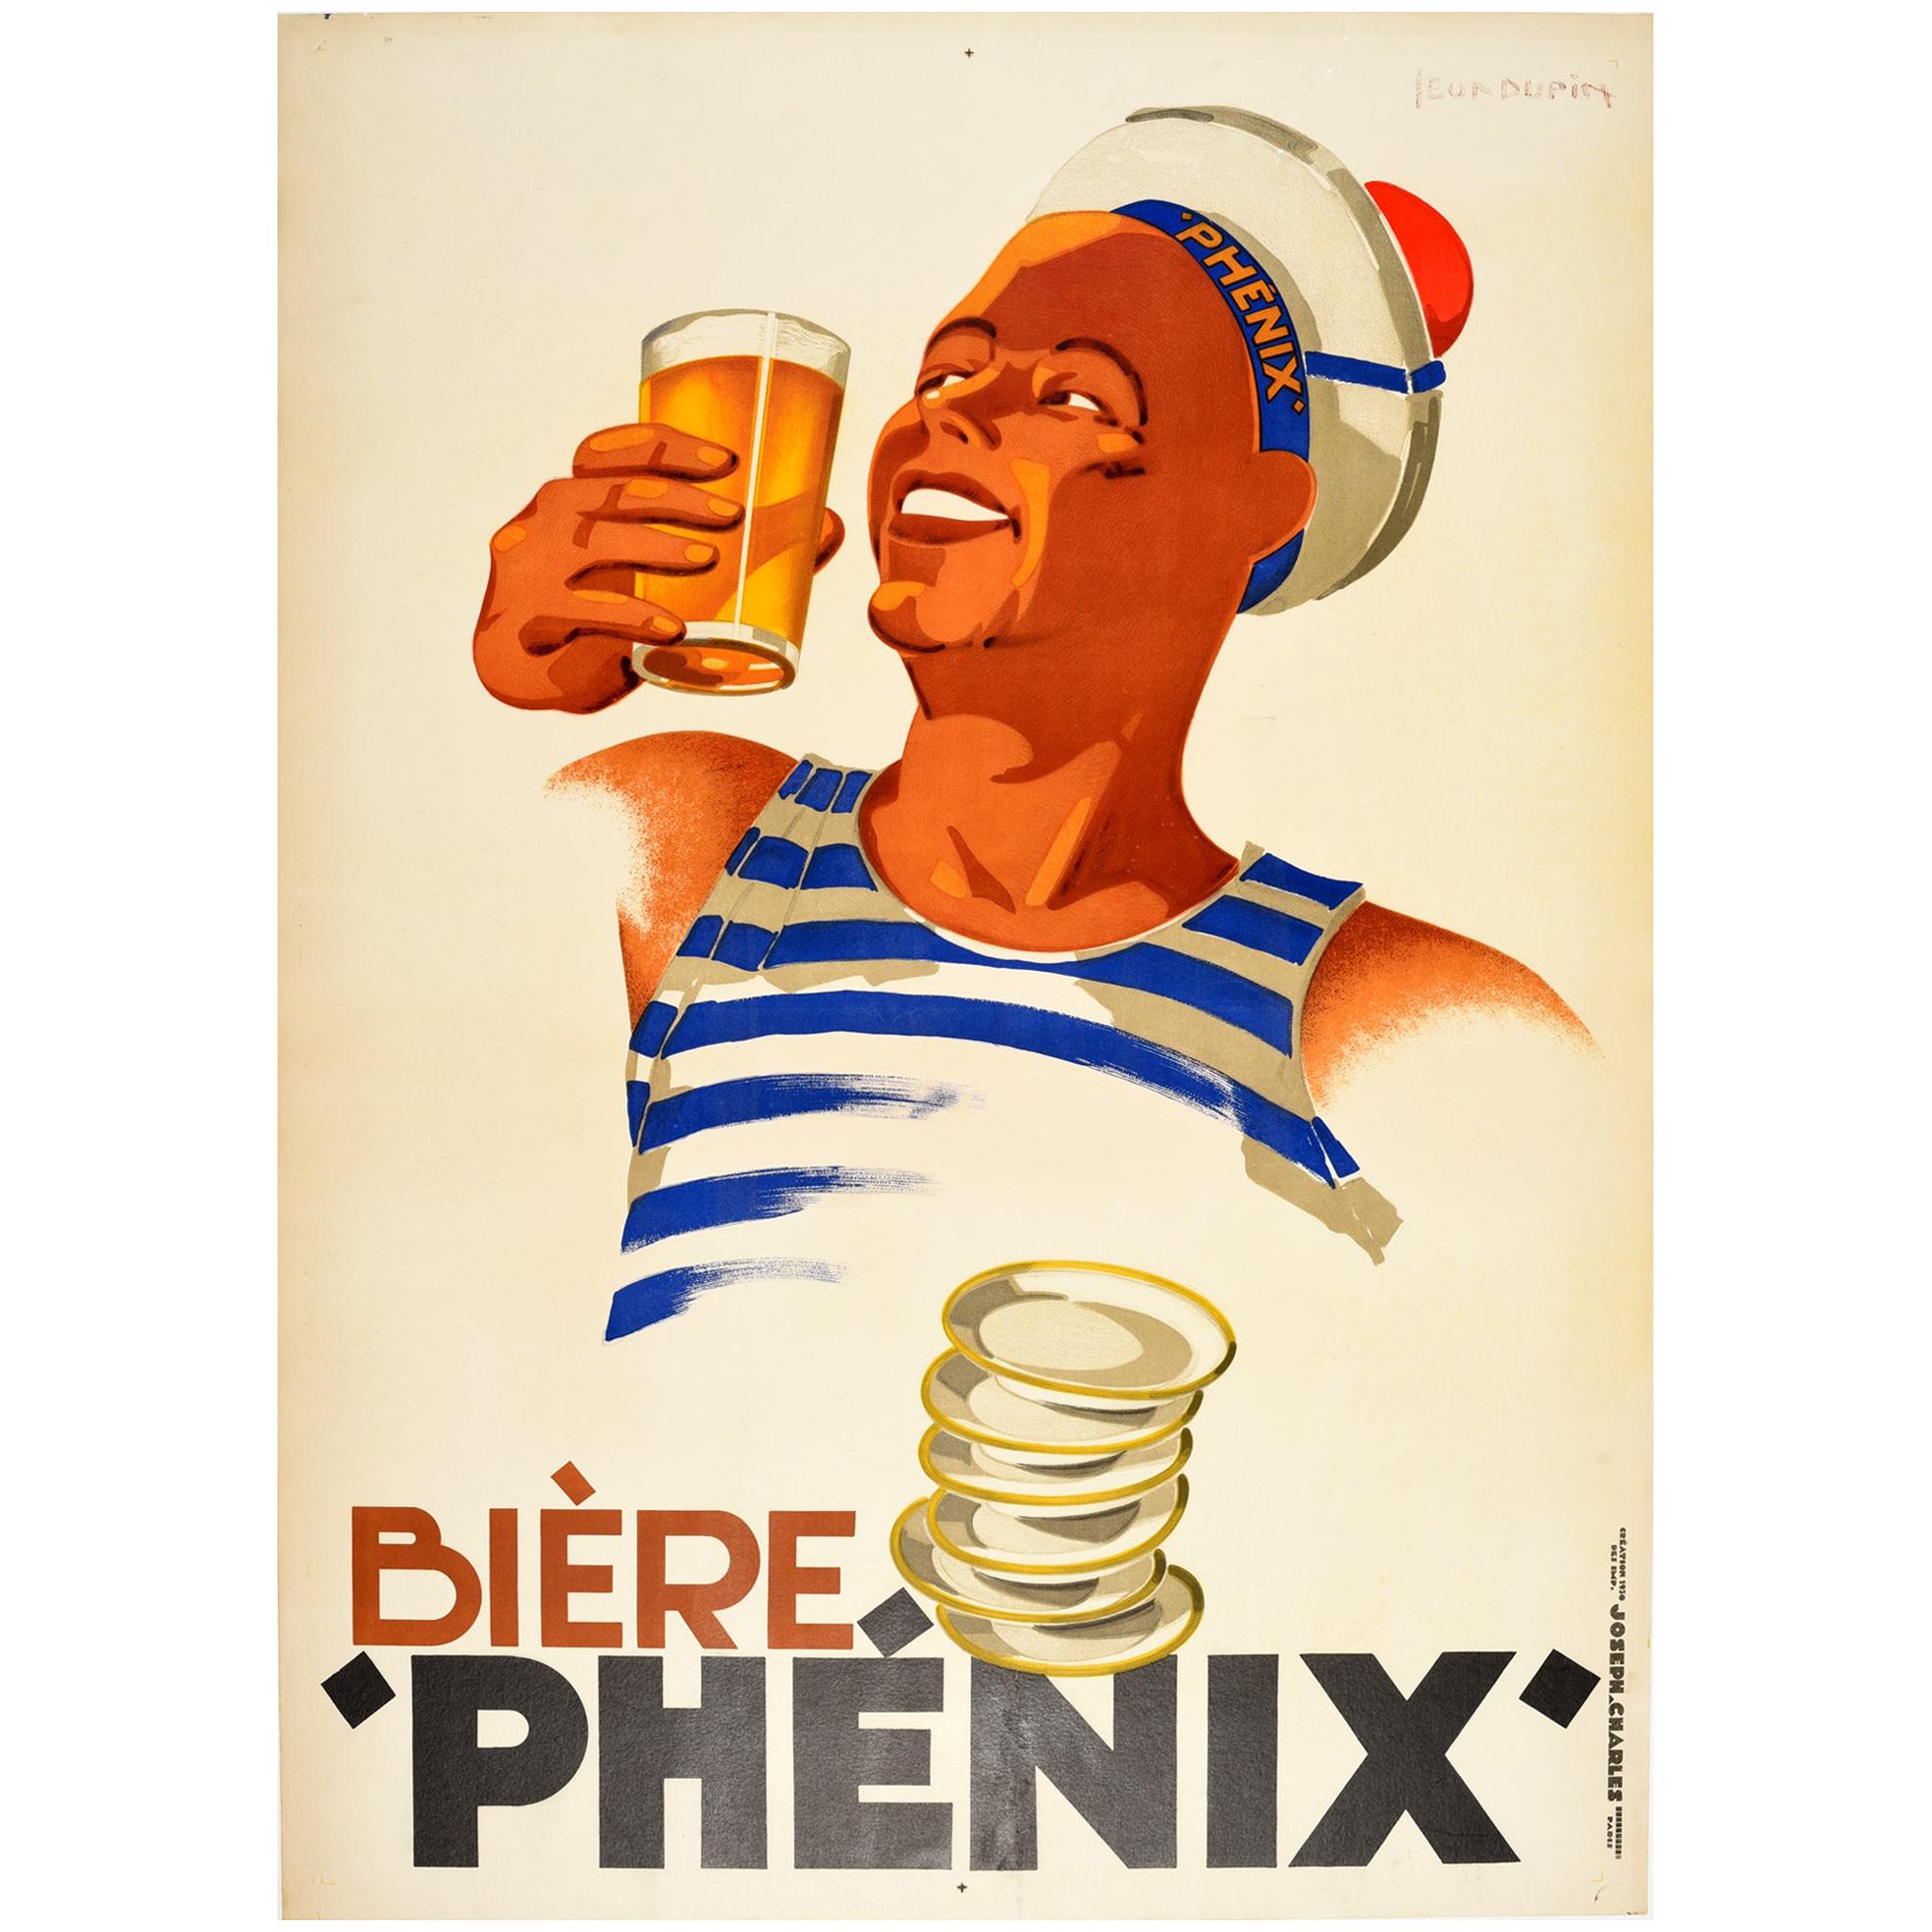 Original Vintage Poster Biere Phenix Beer Sailor Design Drink Advertising Art For Sale